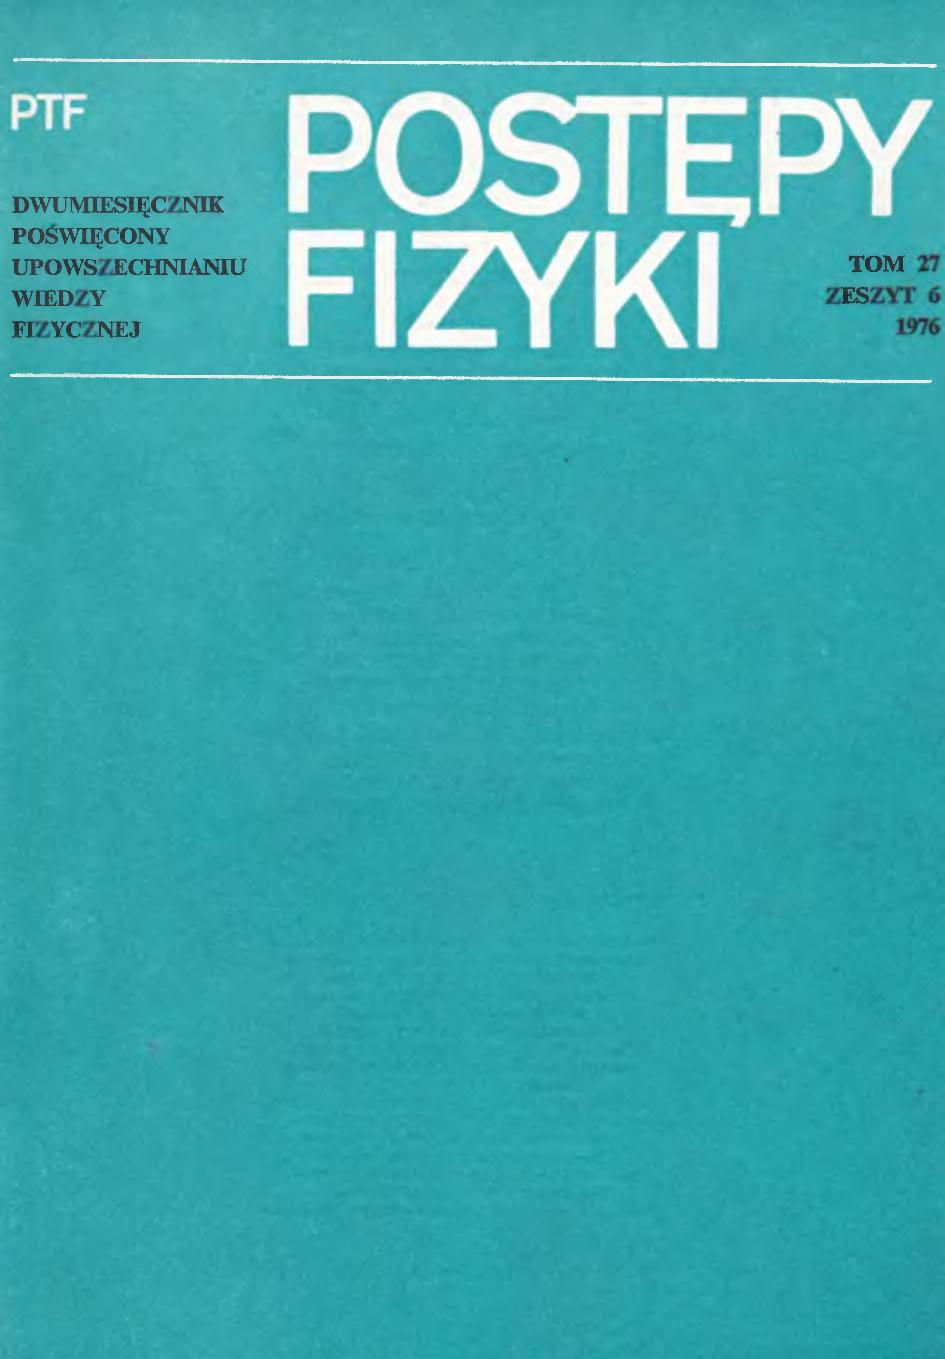 Postępy Fizyki 27 (6) 1976